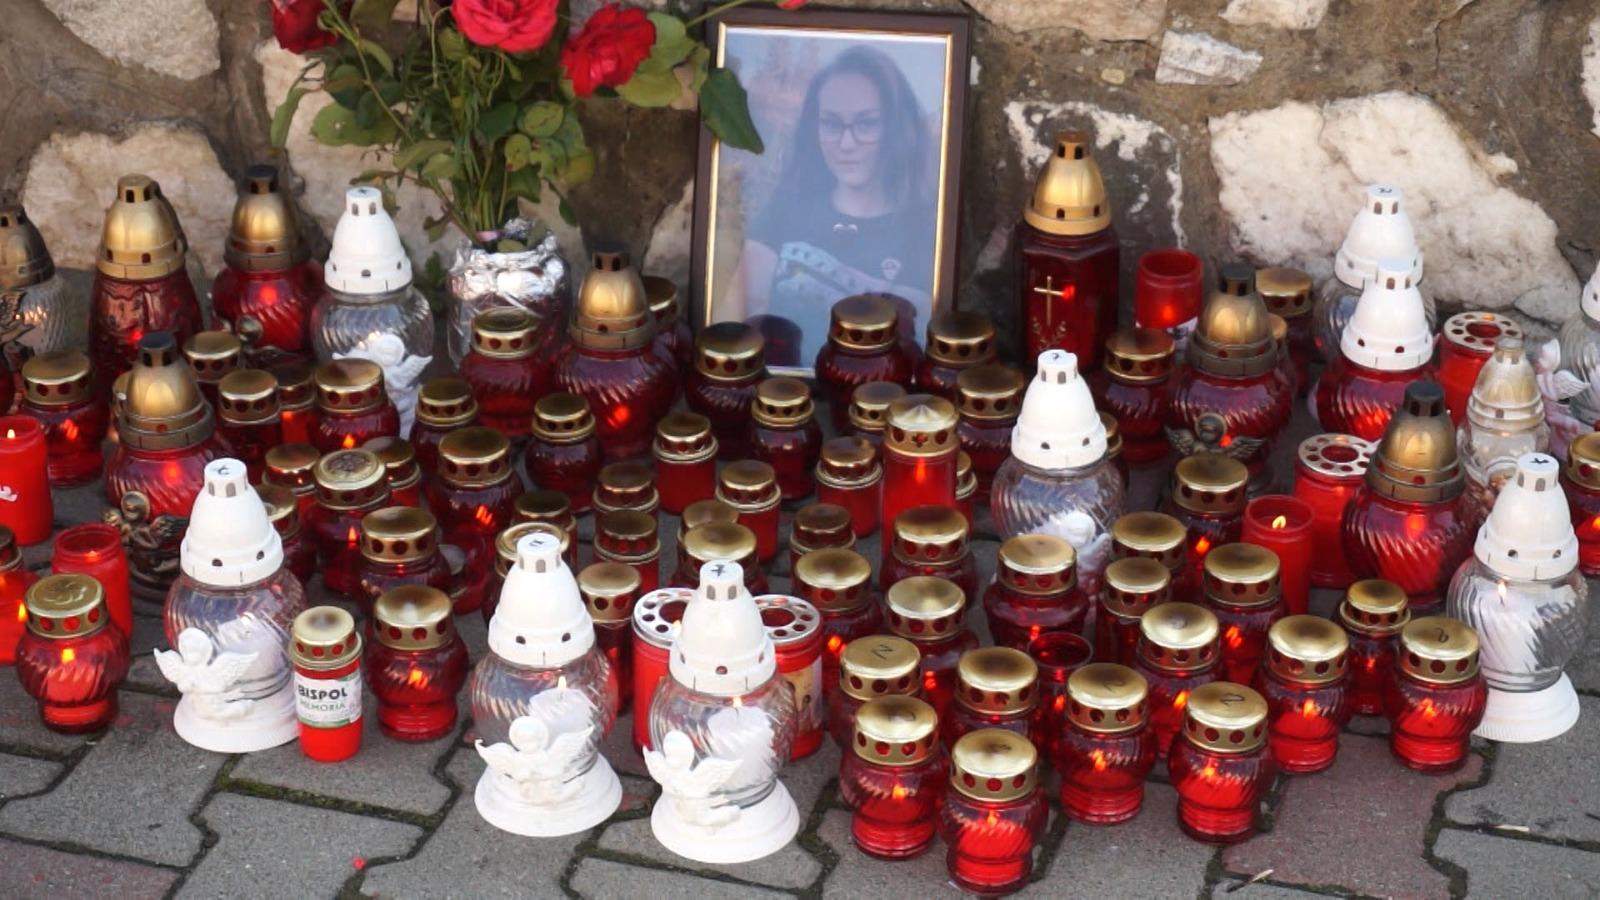 Tatăl adolescentei care a fost găsită moartă într-o râpă, la Telciu, s-a întors din Austria pentru a-și înmormânta copilul: "Era o fetiță veselă, respectuoasă"